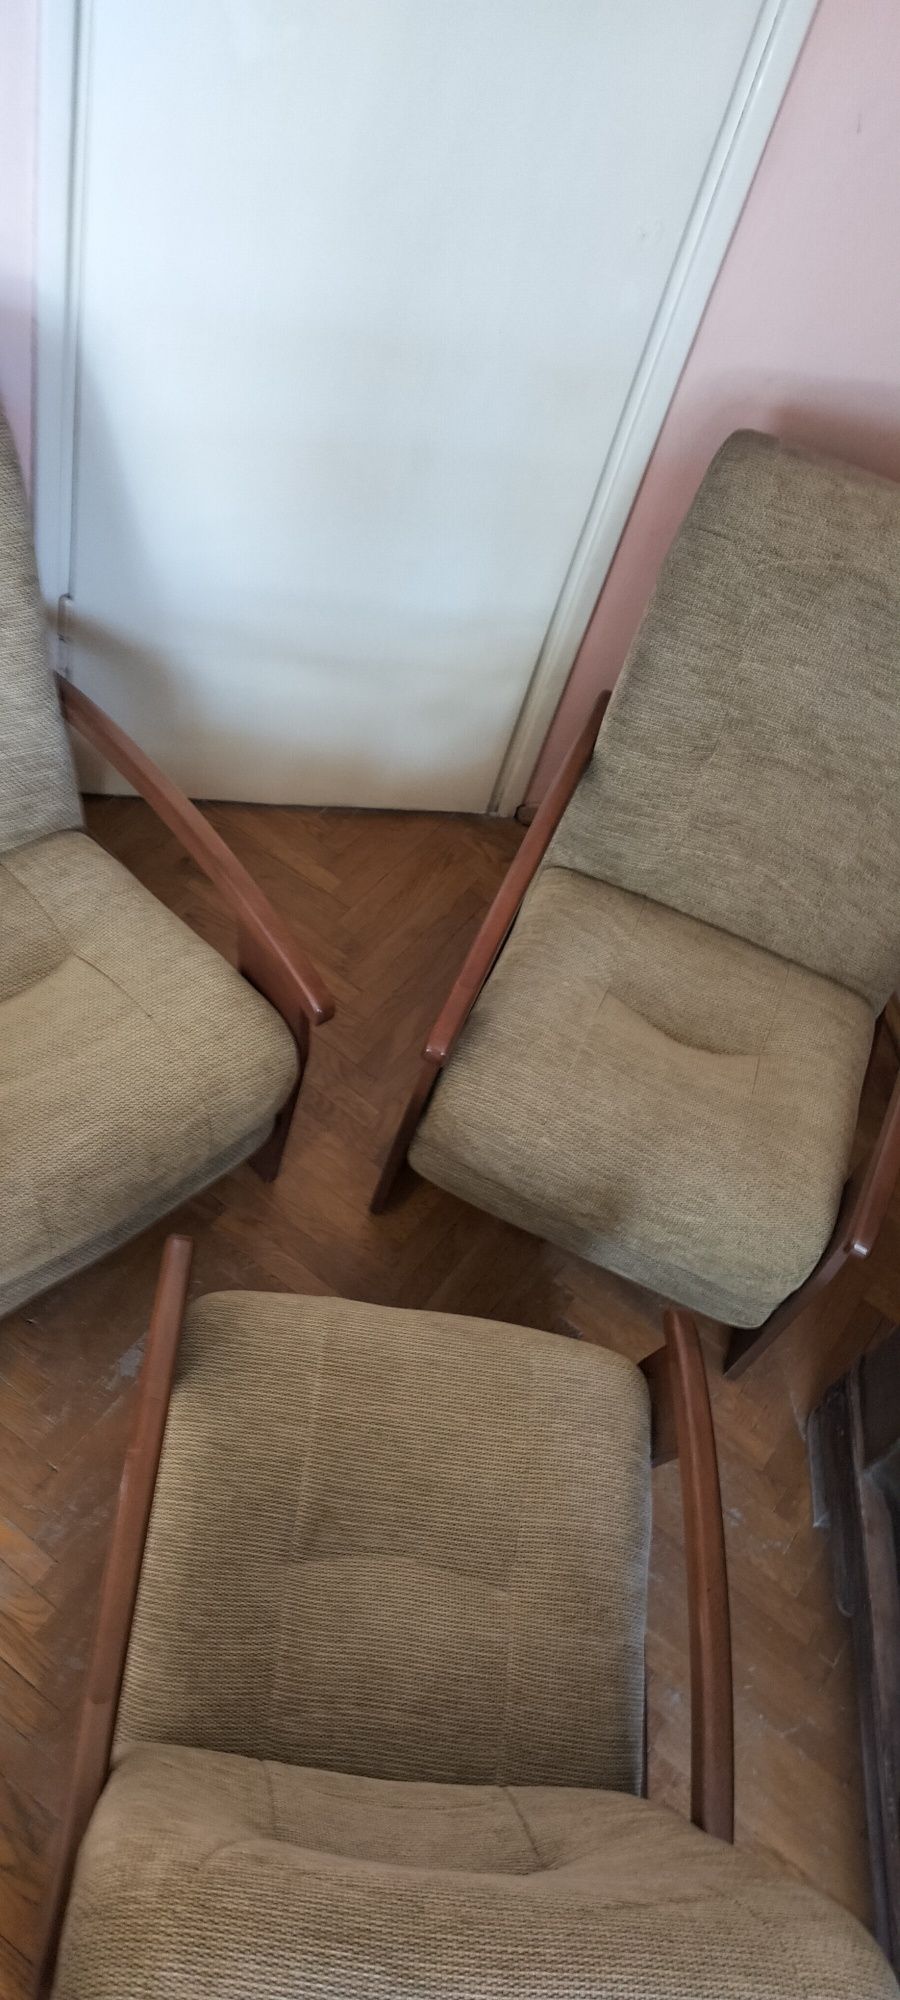 3 Bardzo wygodne fotele - lata 90